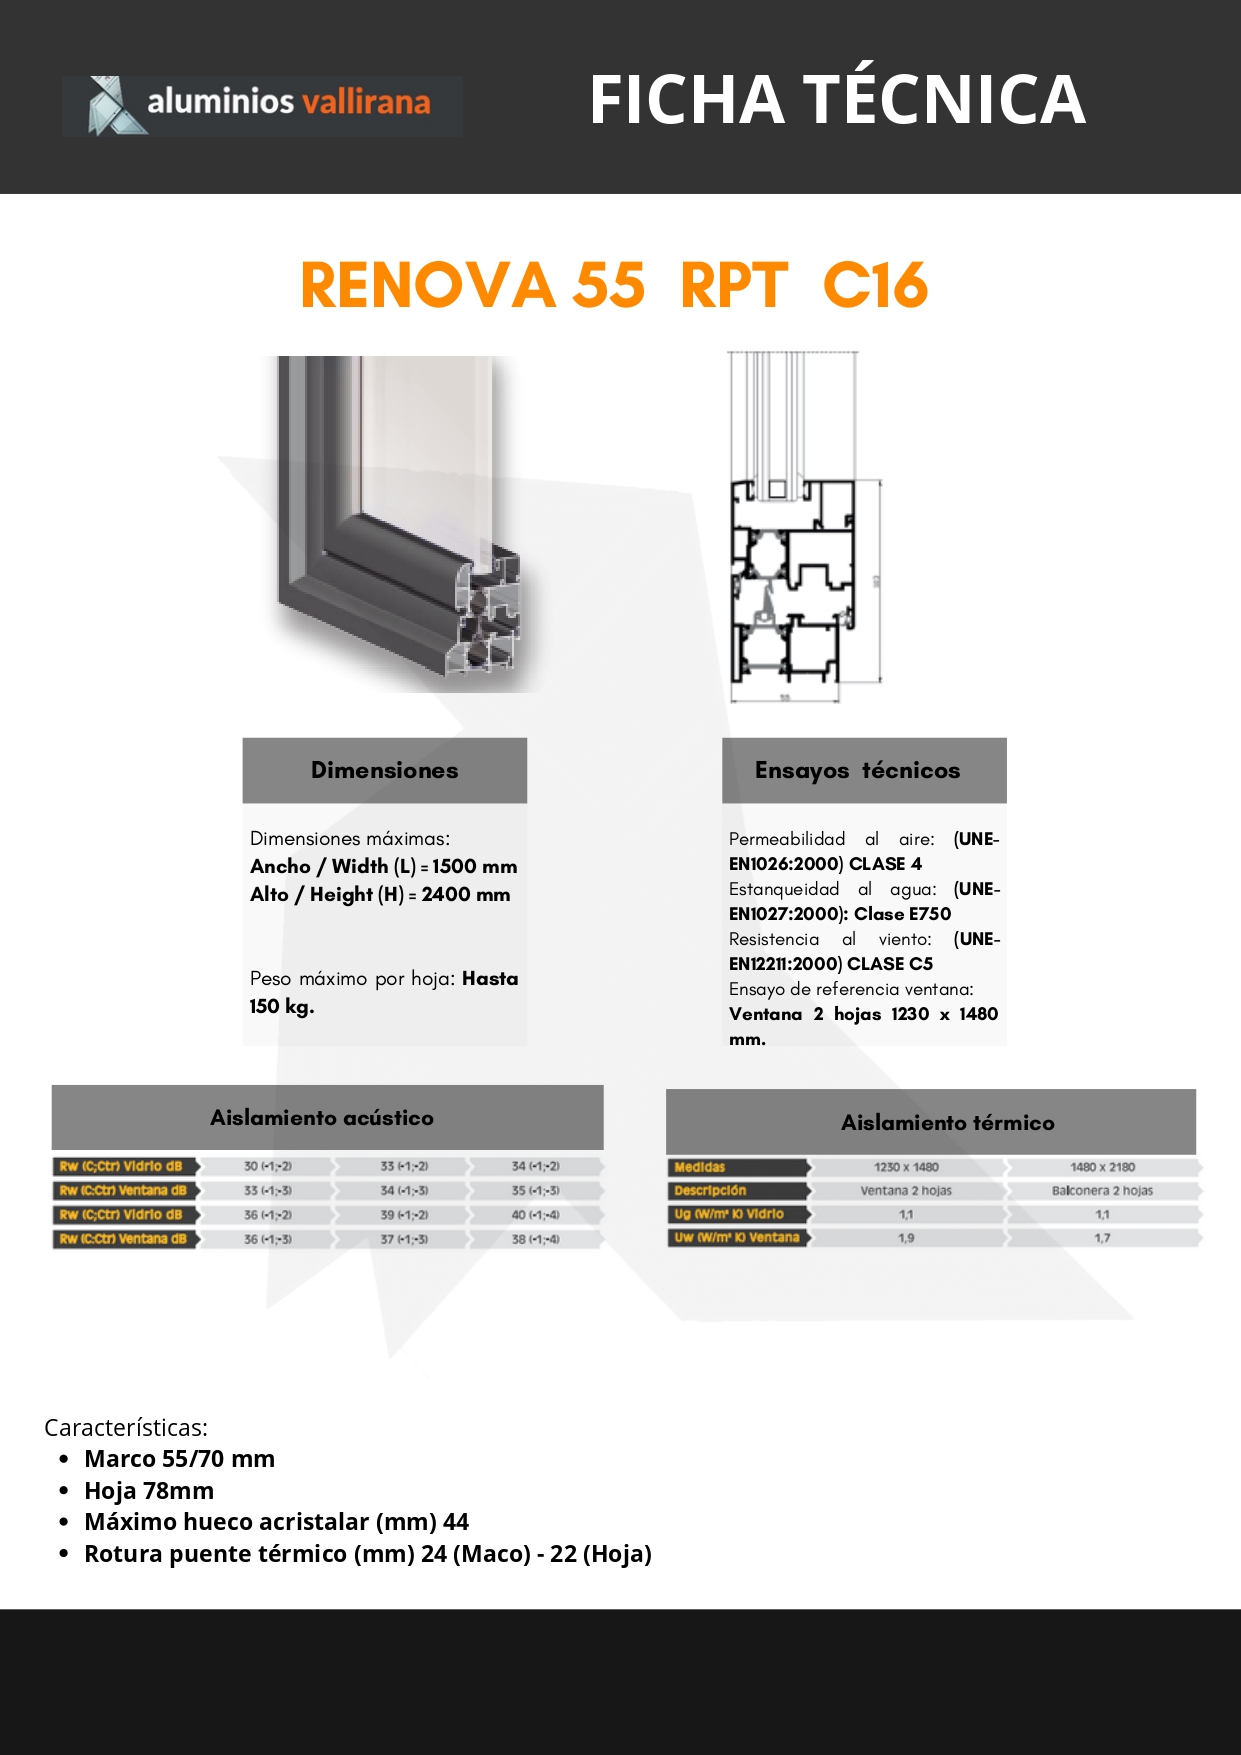 Ficha técnica RENOVA 55 RPT C16